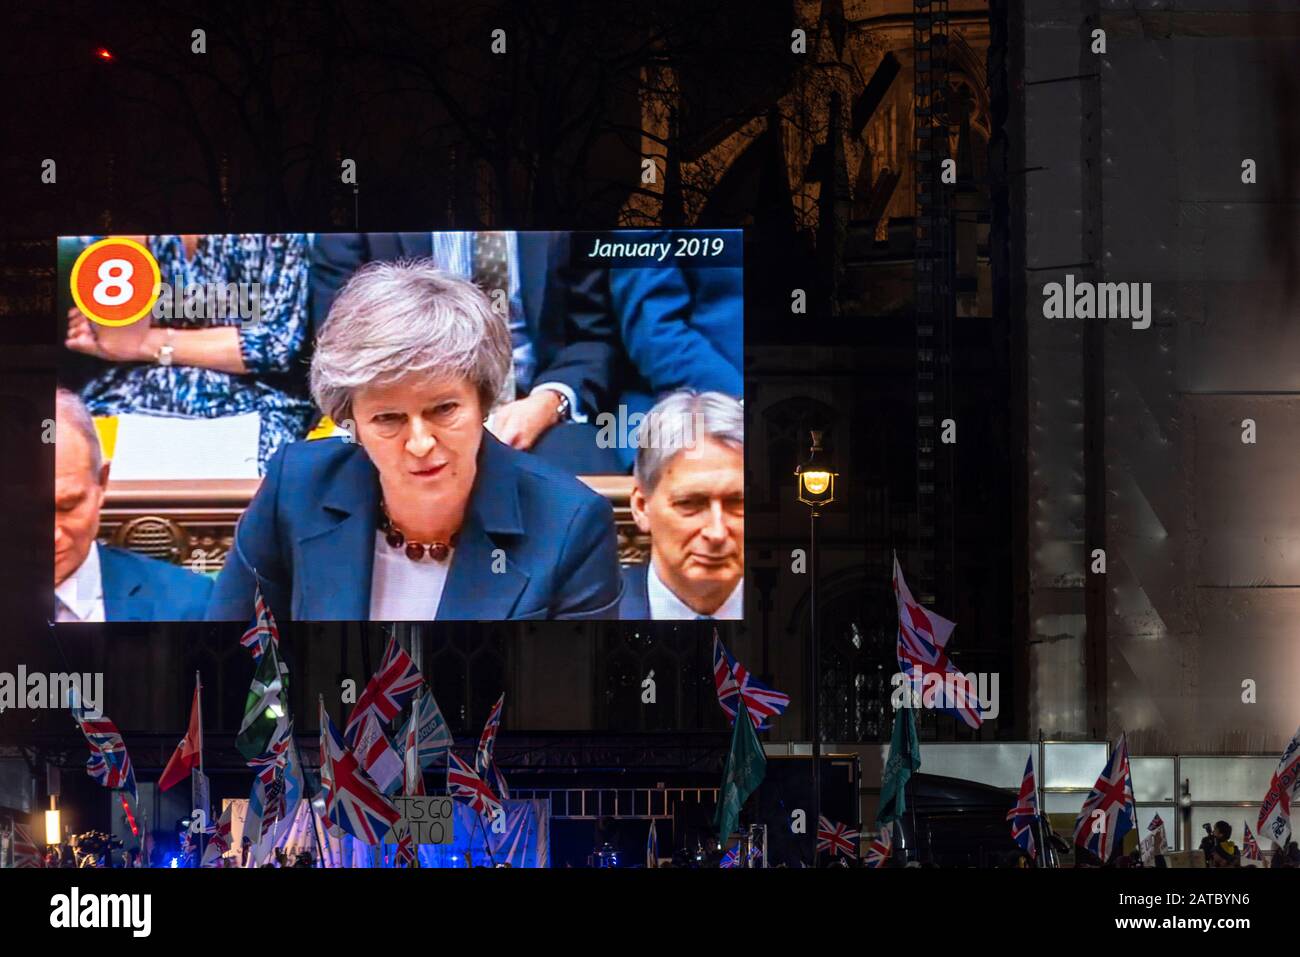 Registrazione di Theresa May come primo Ministro sul grande schermo alla celebrazione della Piazza del Parlamento il giorno della Brexit, 31 gennaio 2020, Londra, Regno Unito Foto Stock